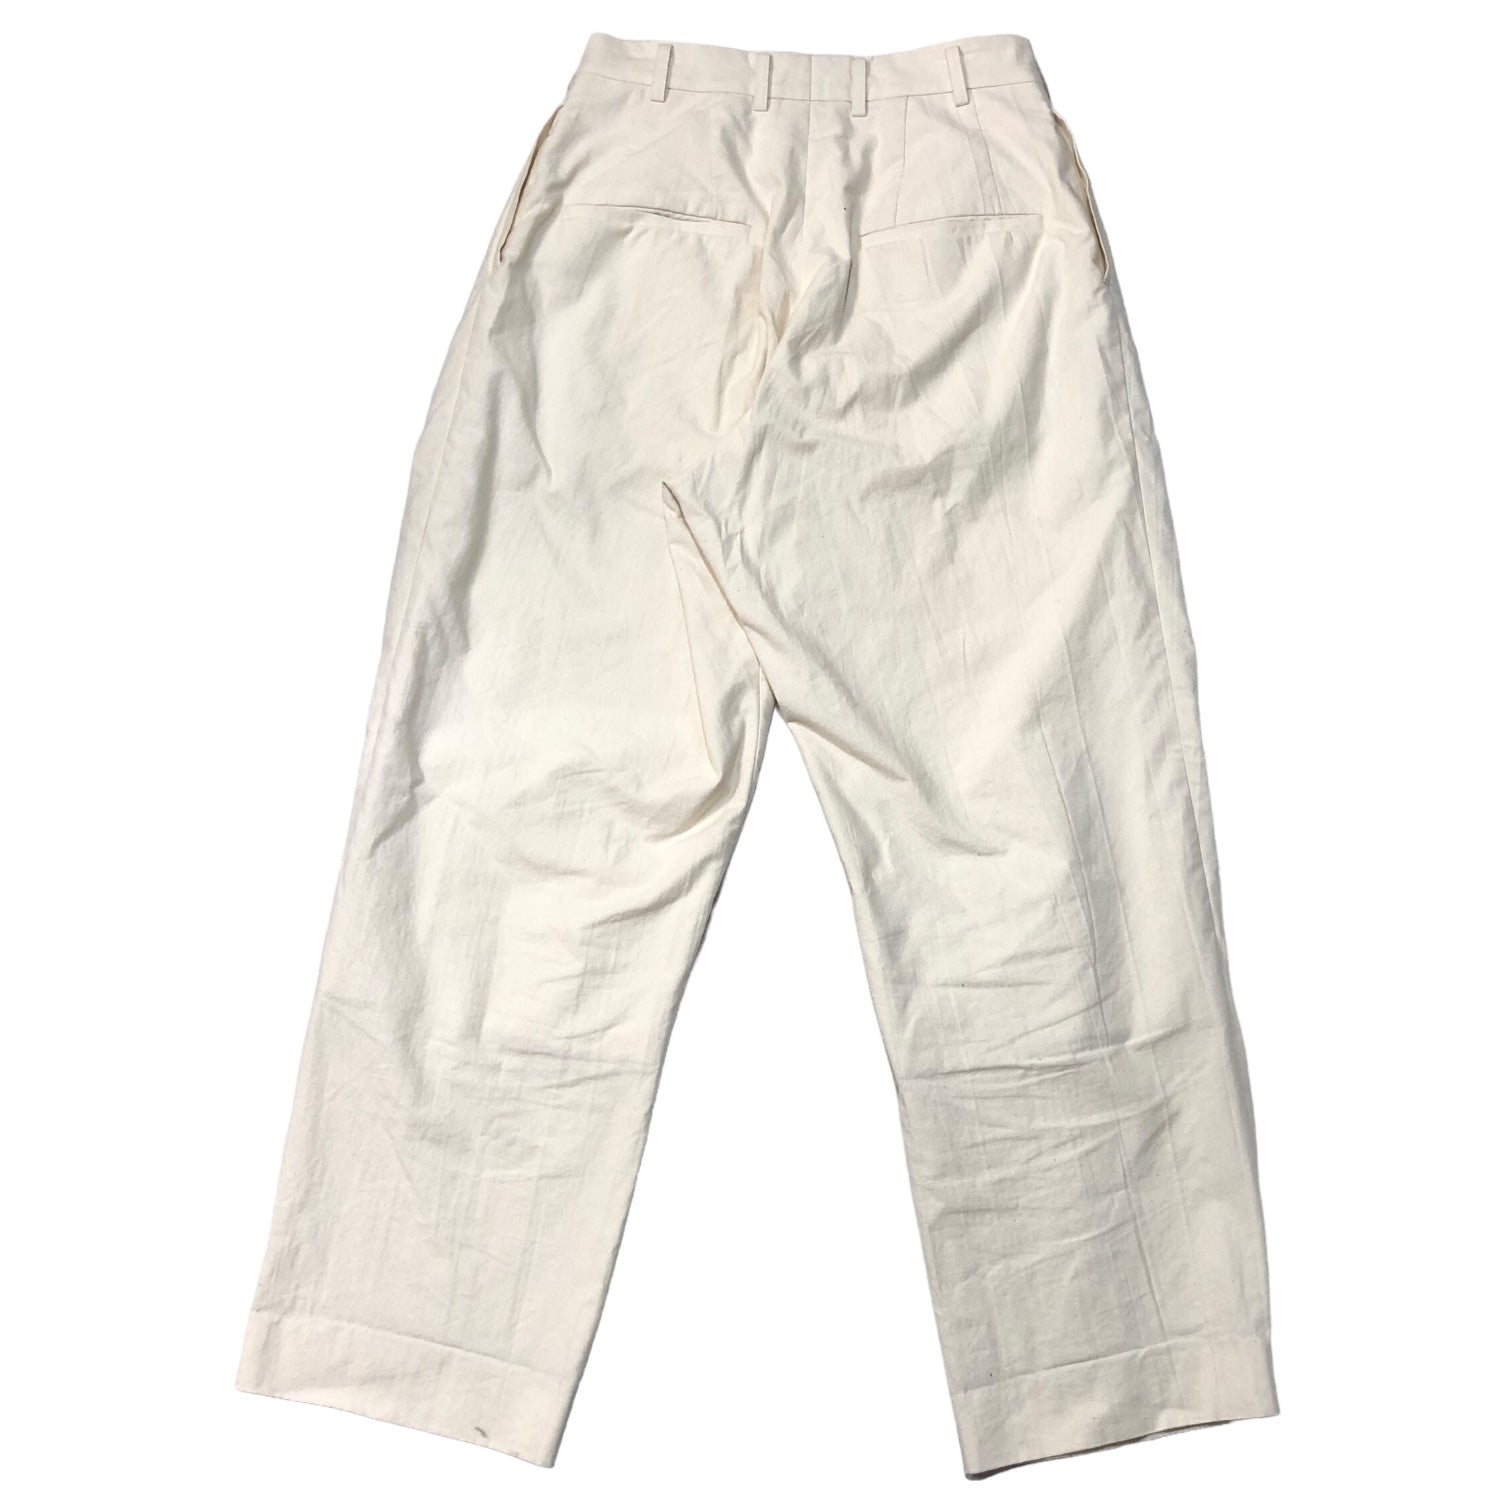 POLYPLOID(ポリプロイド) wide tapered pants ワイドテーパードパンツ 05-A-07 2(M) オフホワイト